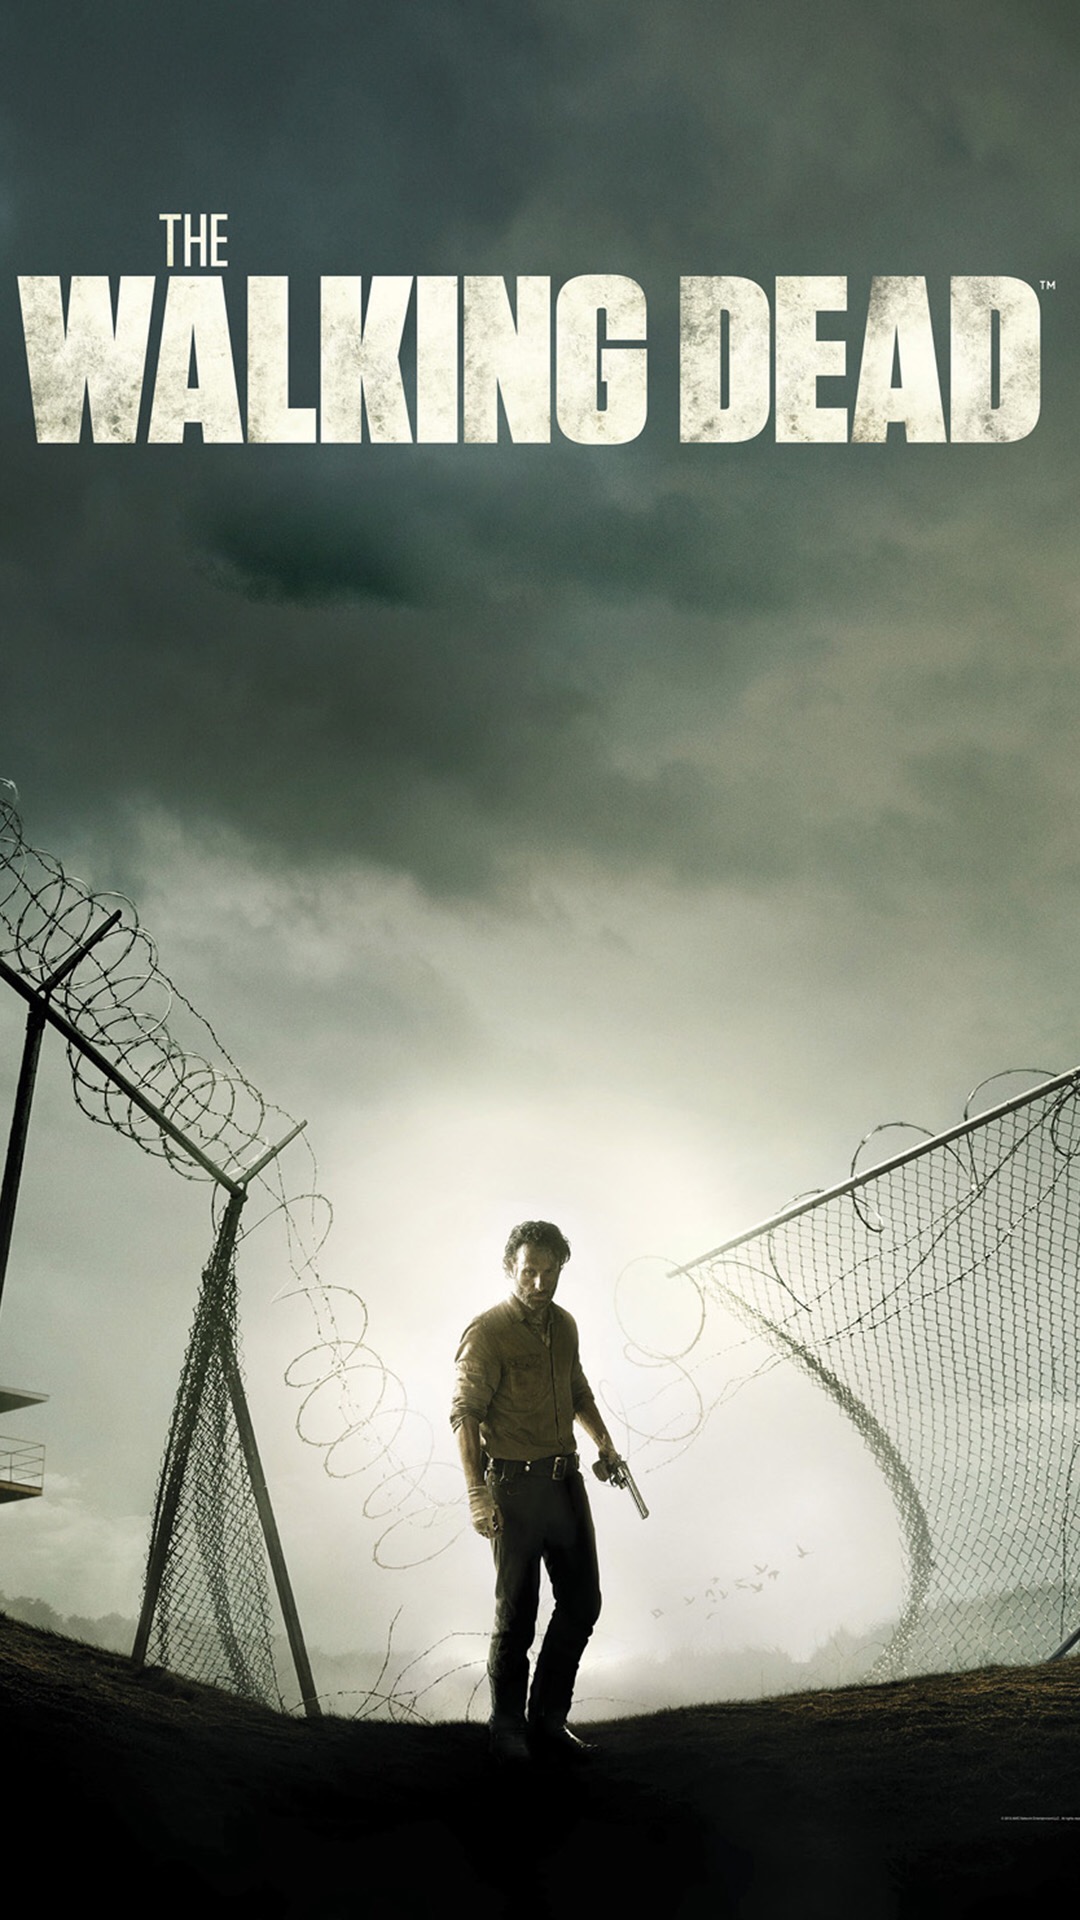 The Walking Dead iPhone wallpaper 5